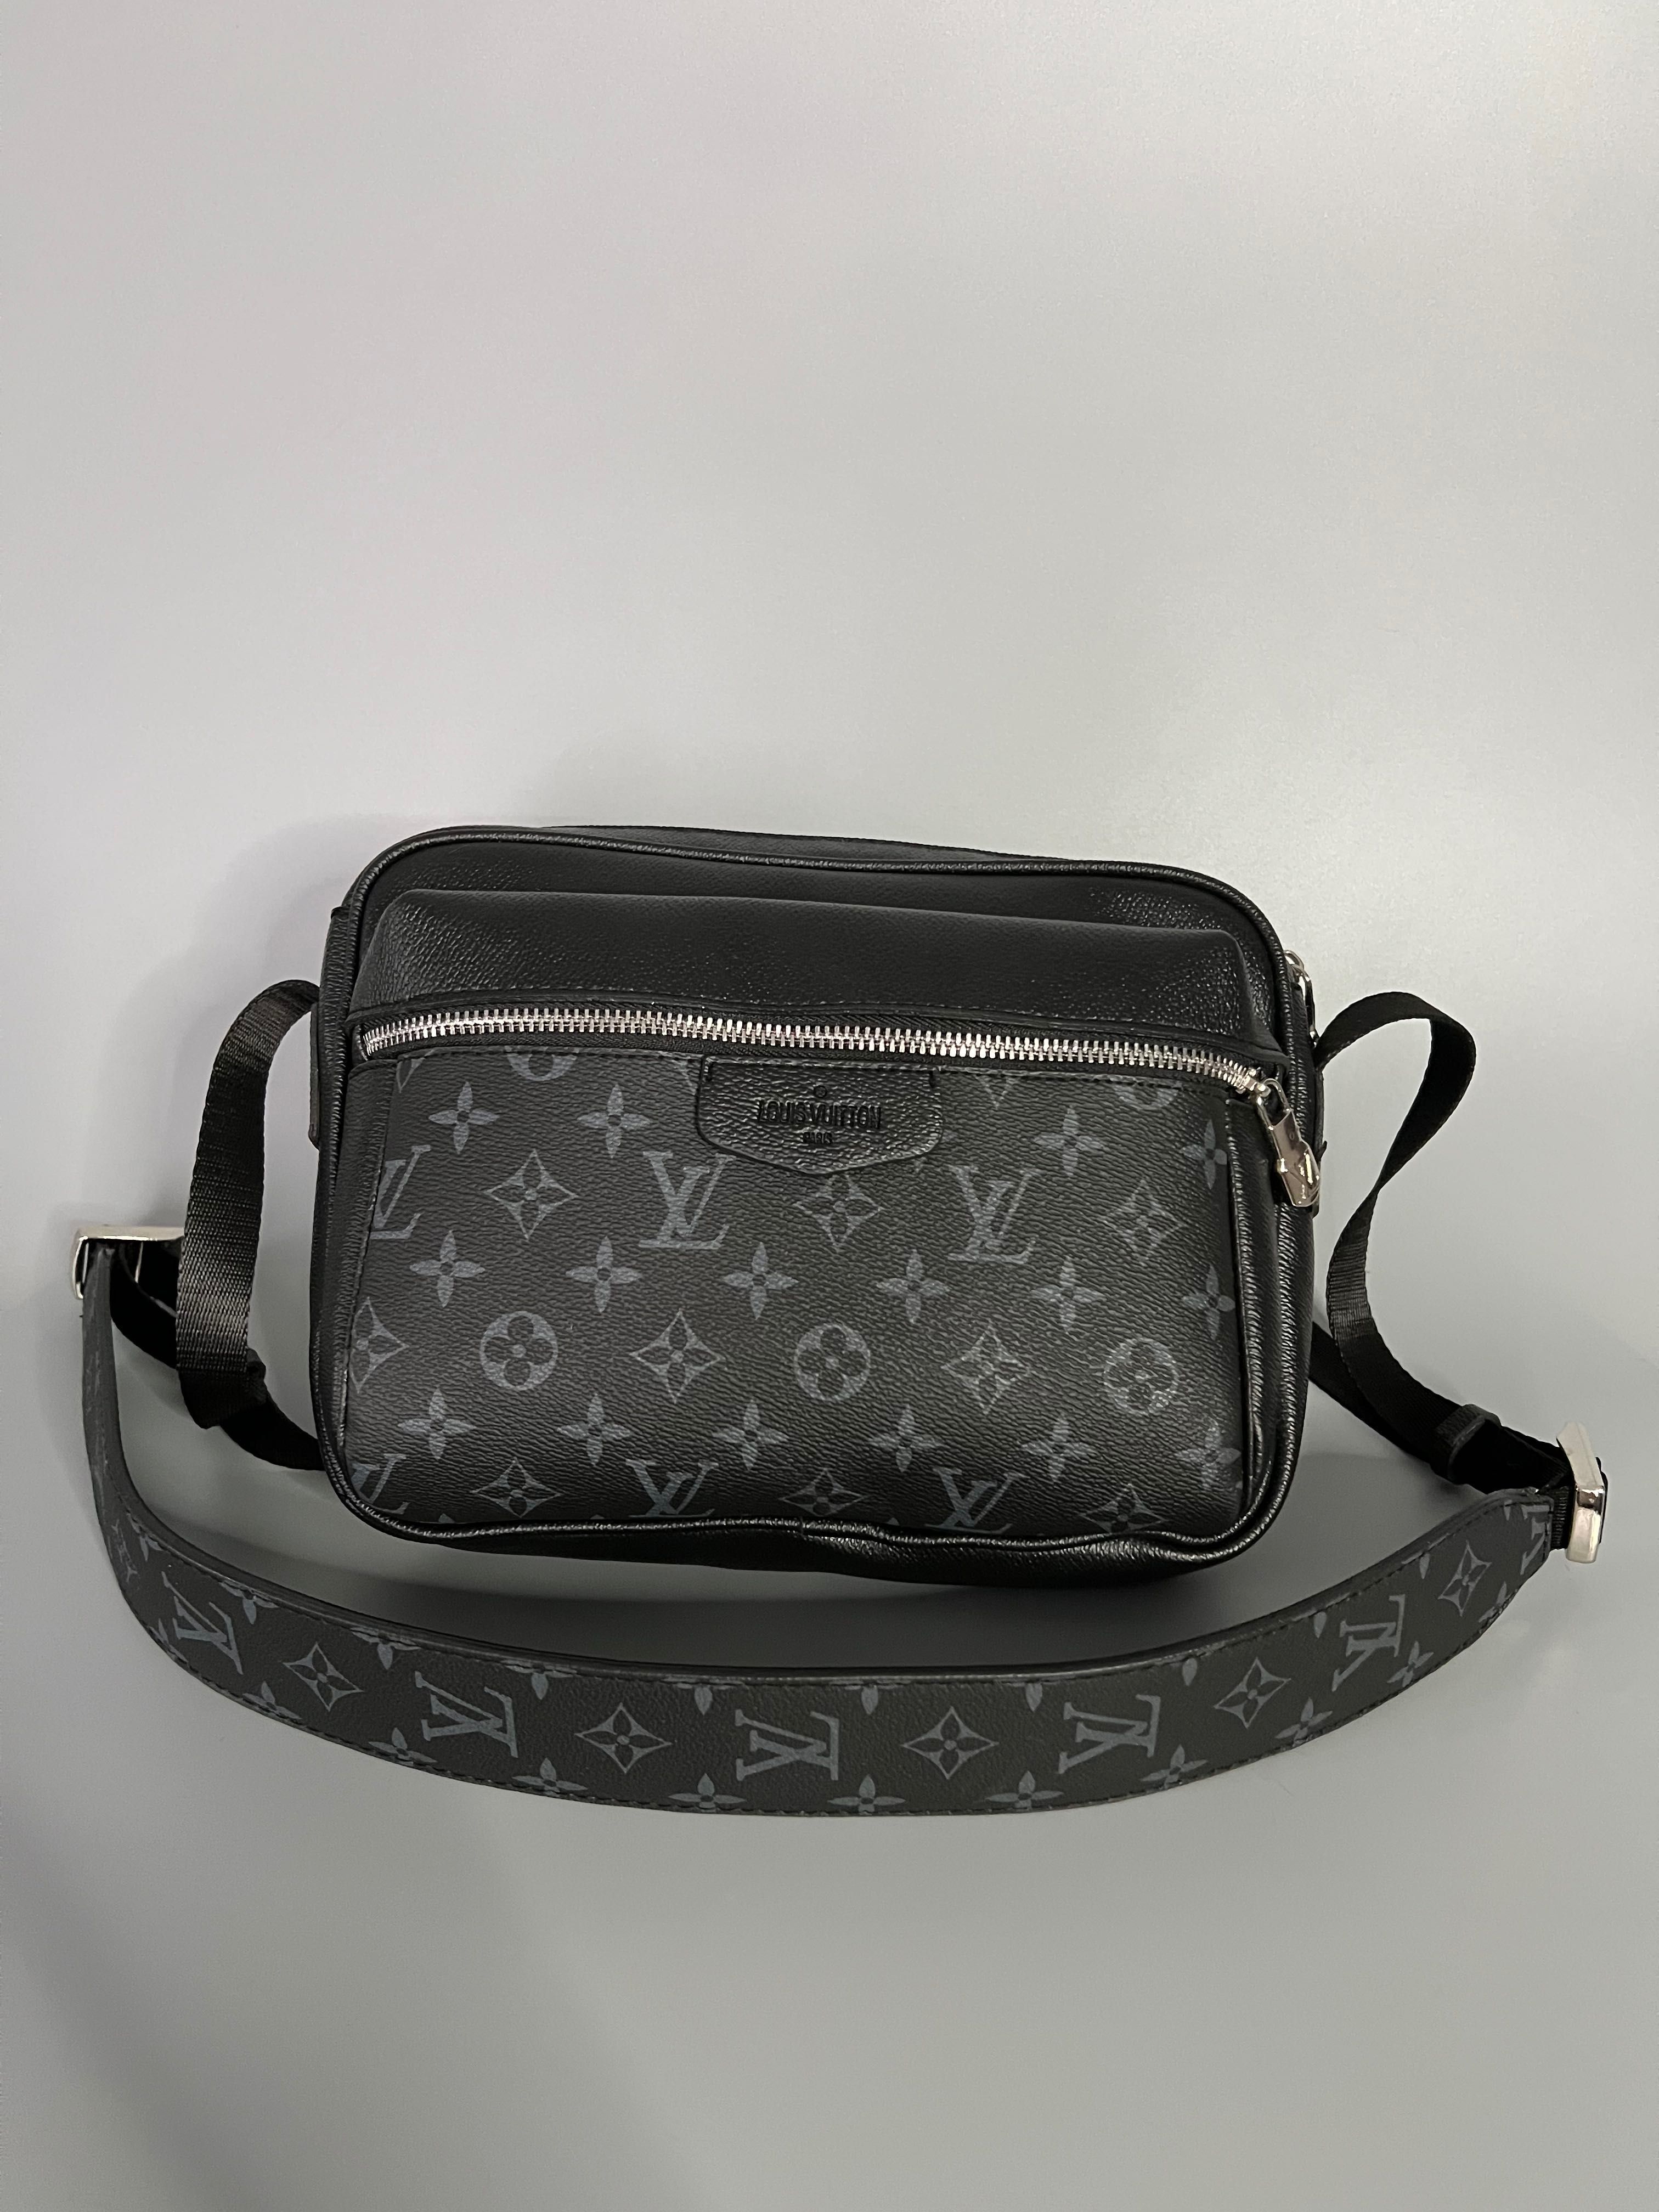 Мужская сумка-меседжер через плечо черная Louis VuittonЧоловіча сумка